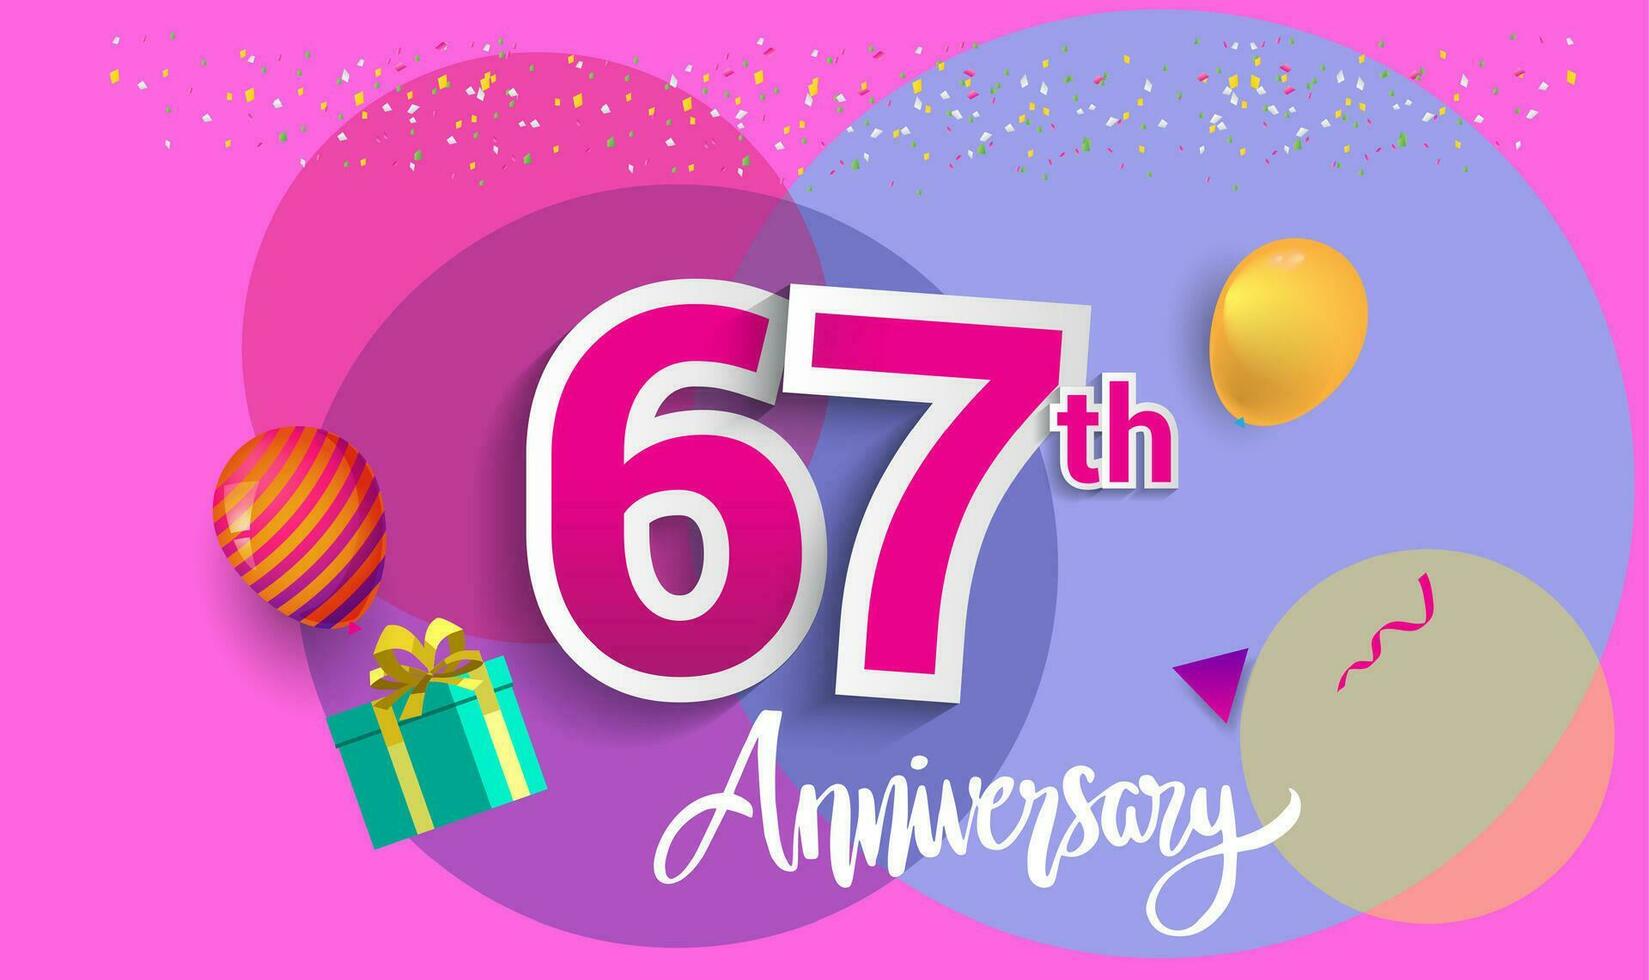 67º años aniversario celebracion diseño, con regalo caja y globos, cinta, vistoso vector modelo elementos para tu cumpleaños celebrando fiesta.